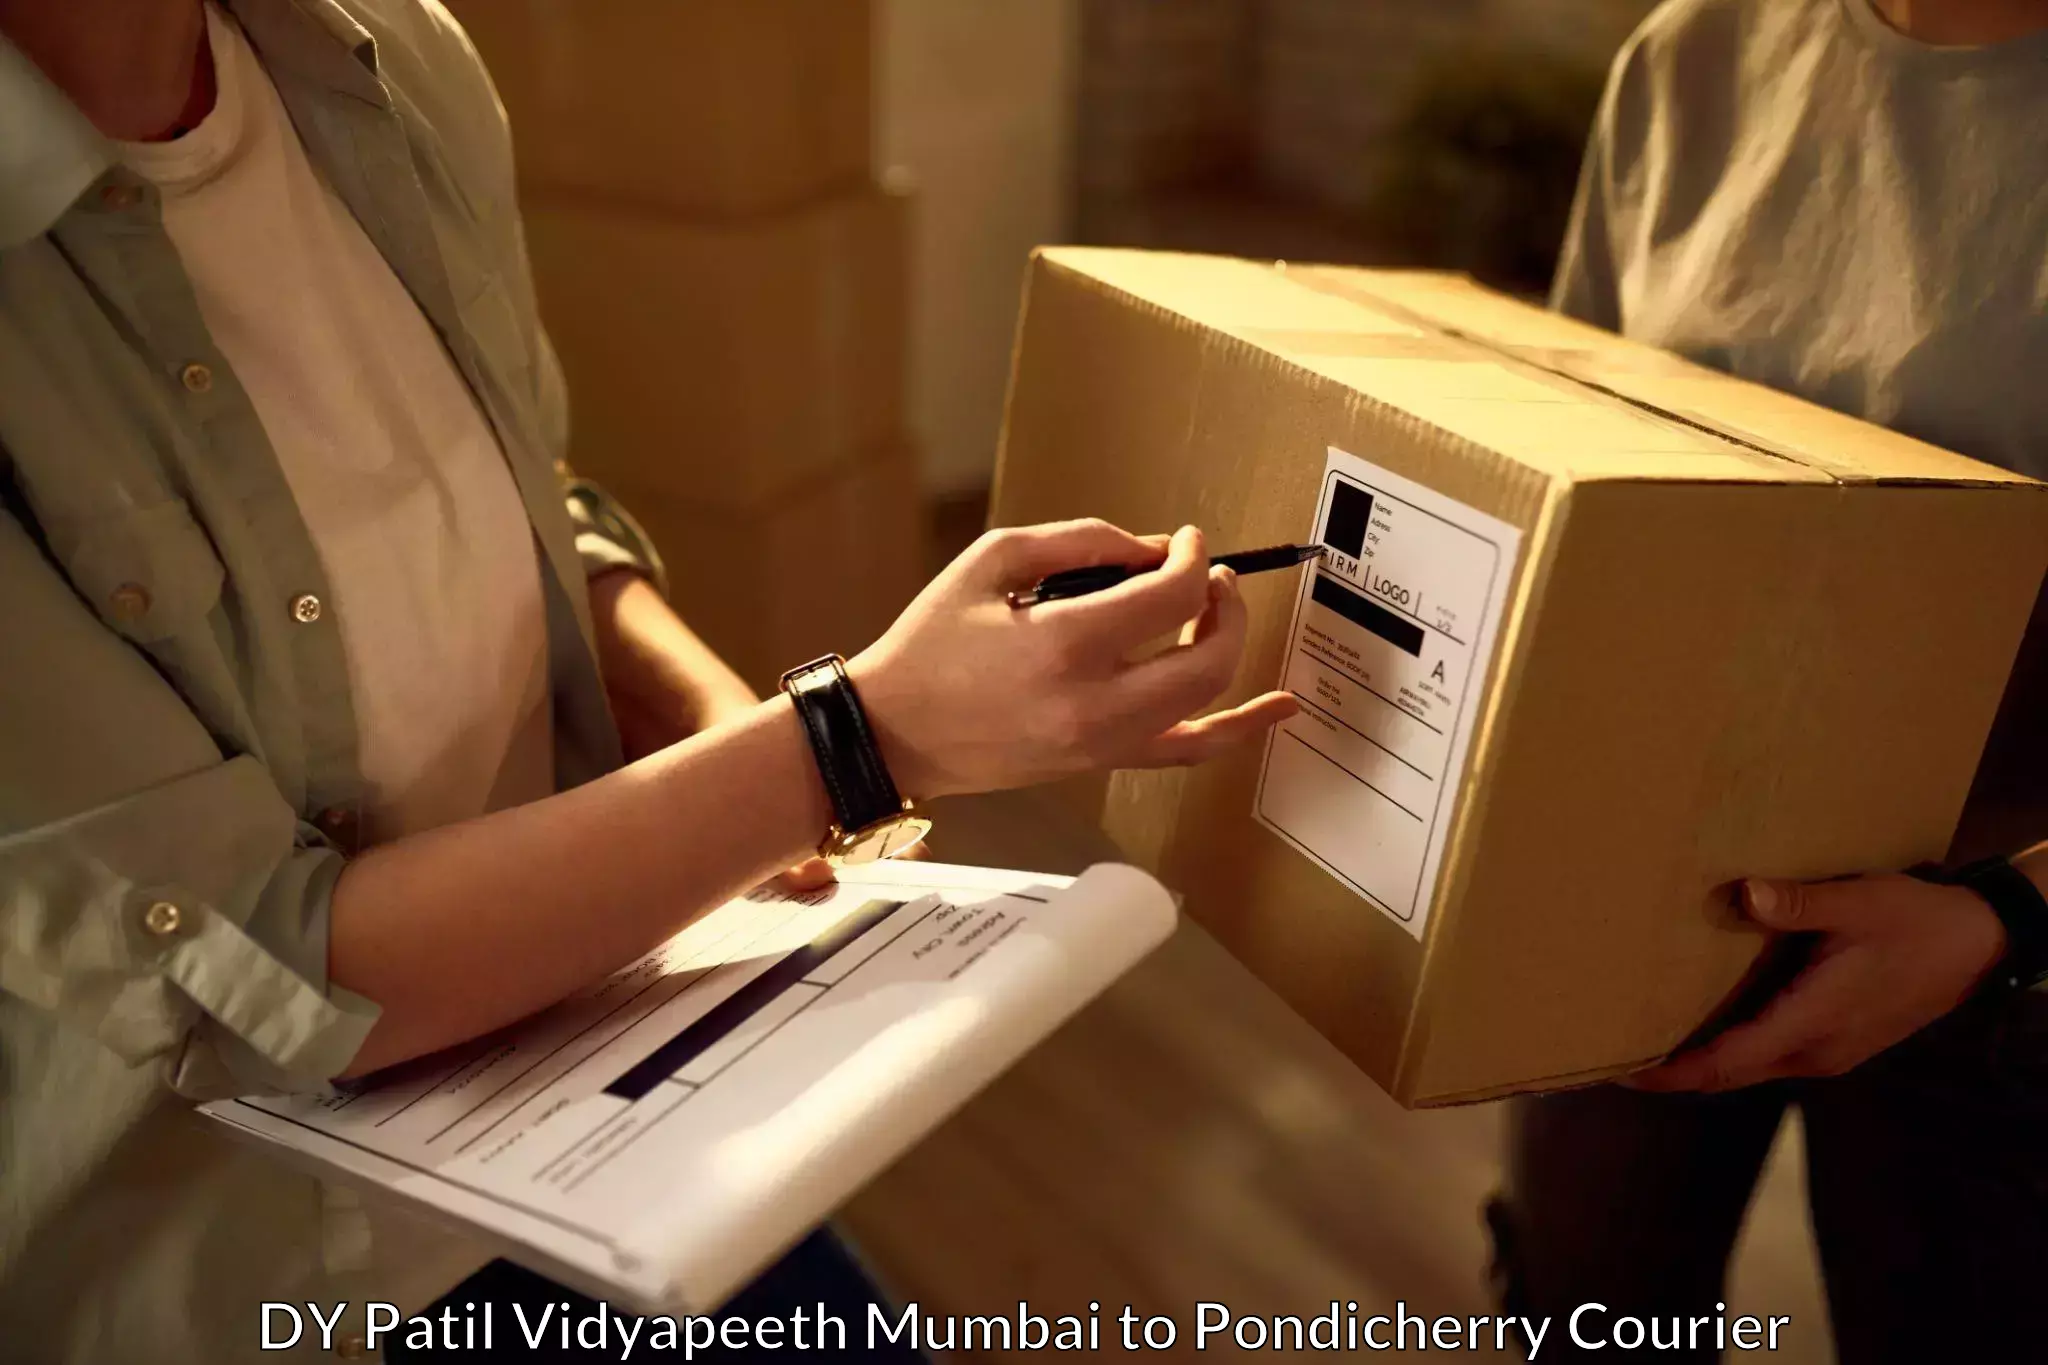 Urgent courier needs DY Patil Vidyapeeth Mumbai to Karaikal